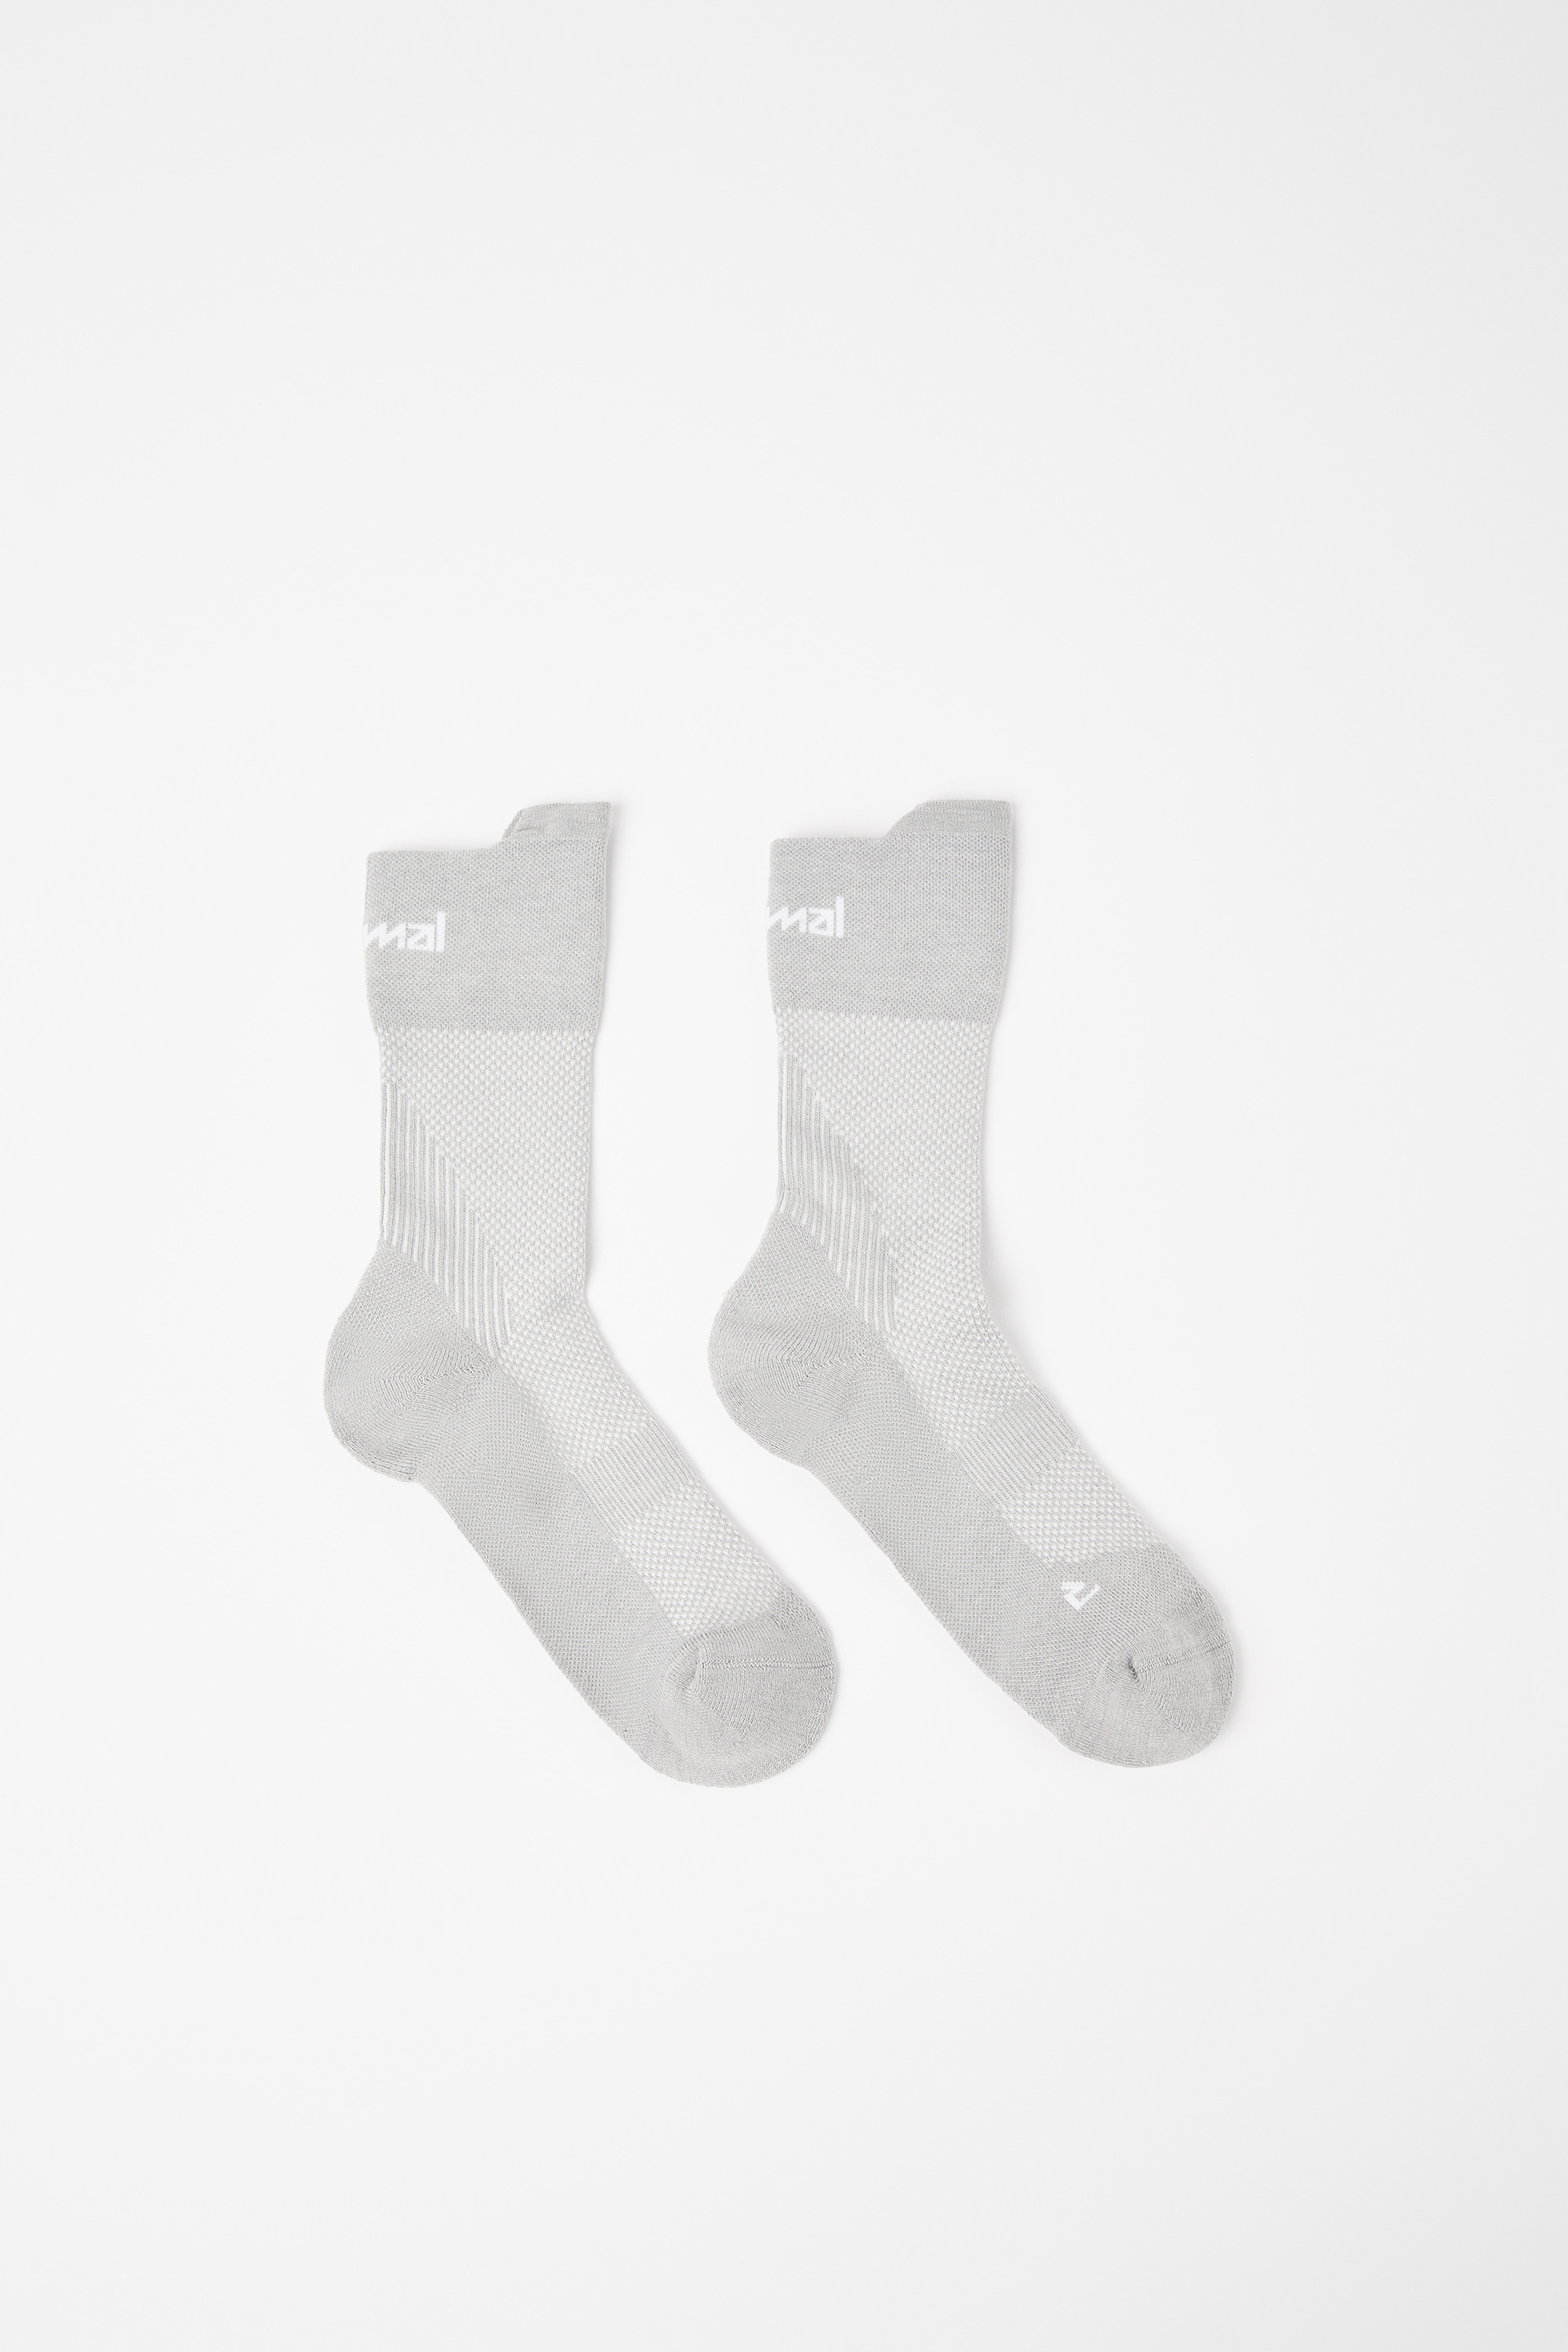 Privilegio Yogur cueva NNormal Running socks N1ARS01-003 Mujer. Tienda Oficial Online Spanien